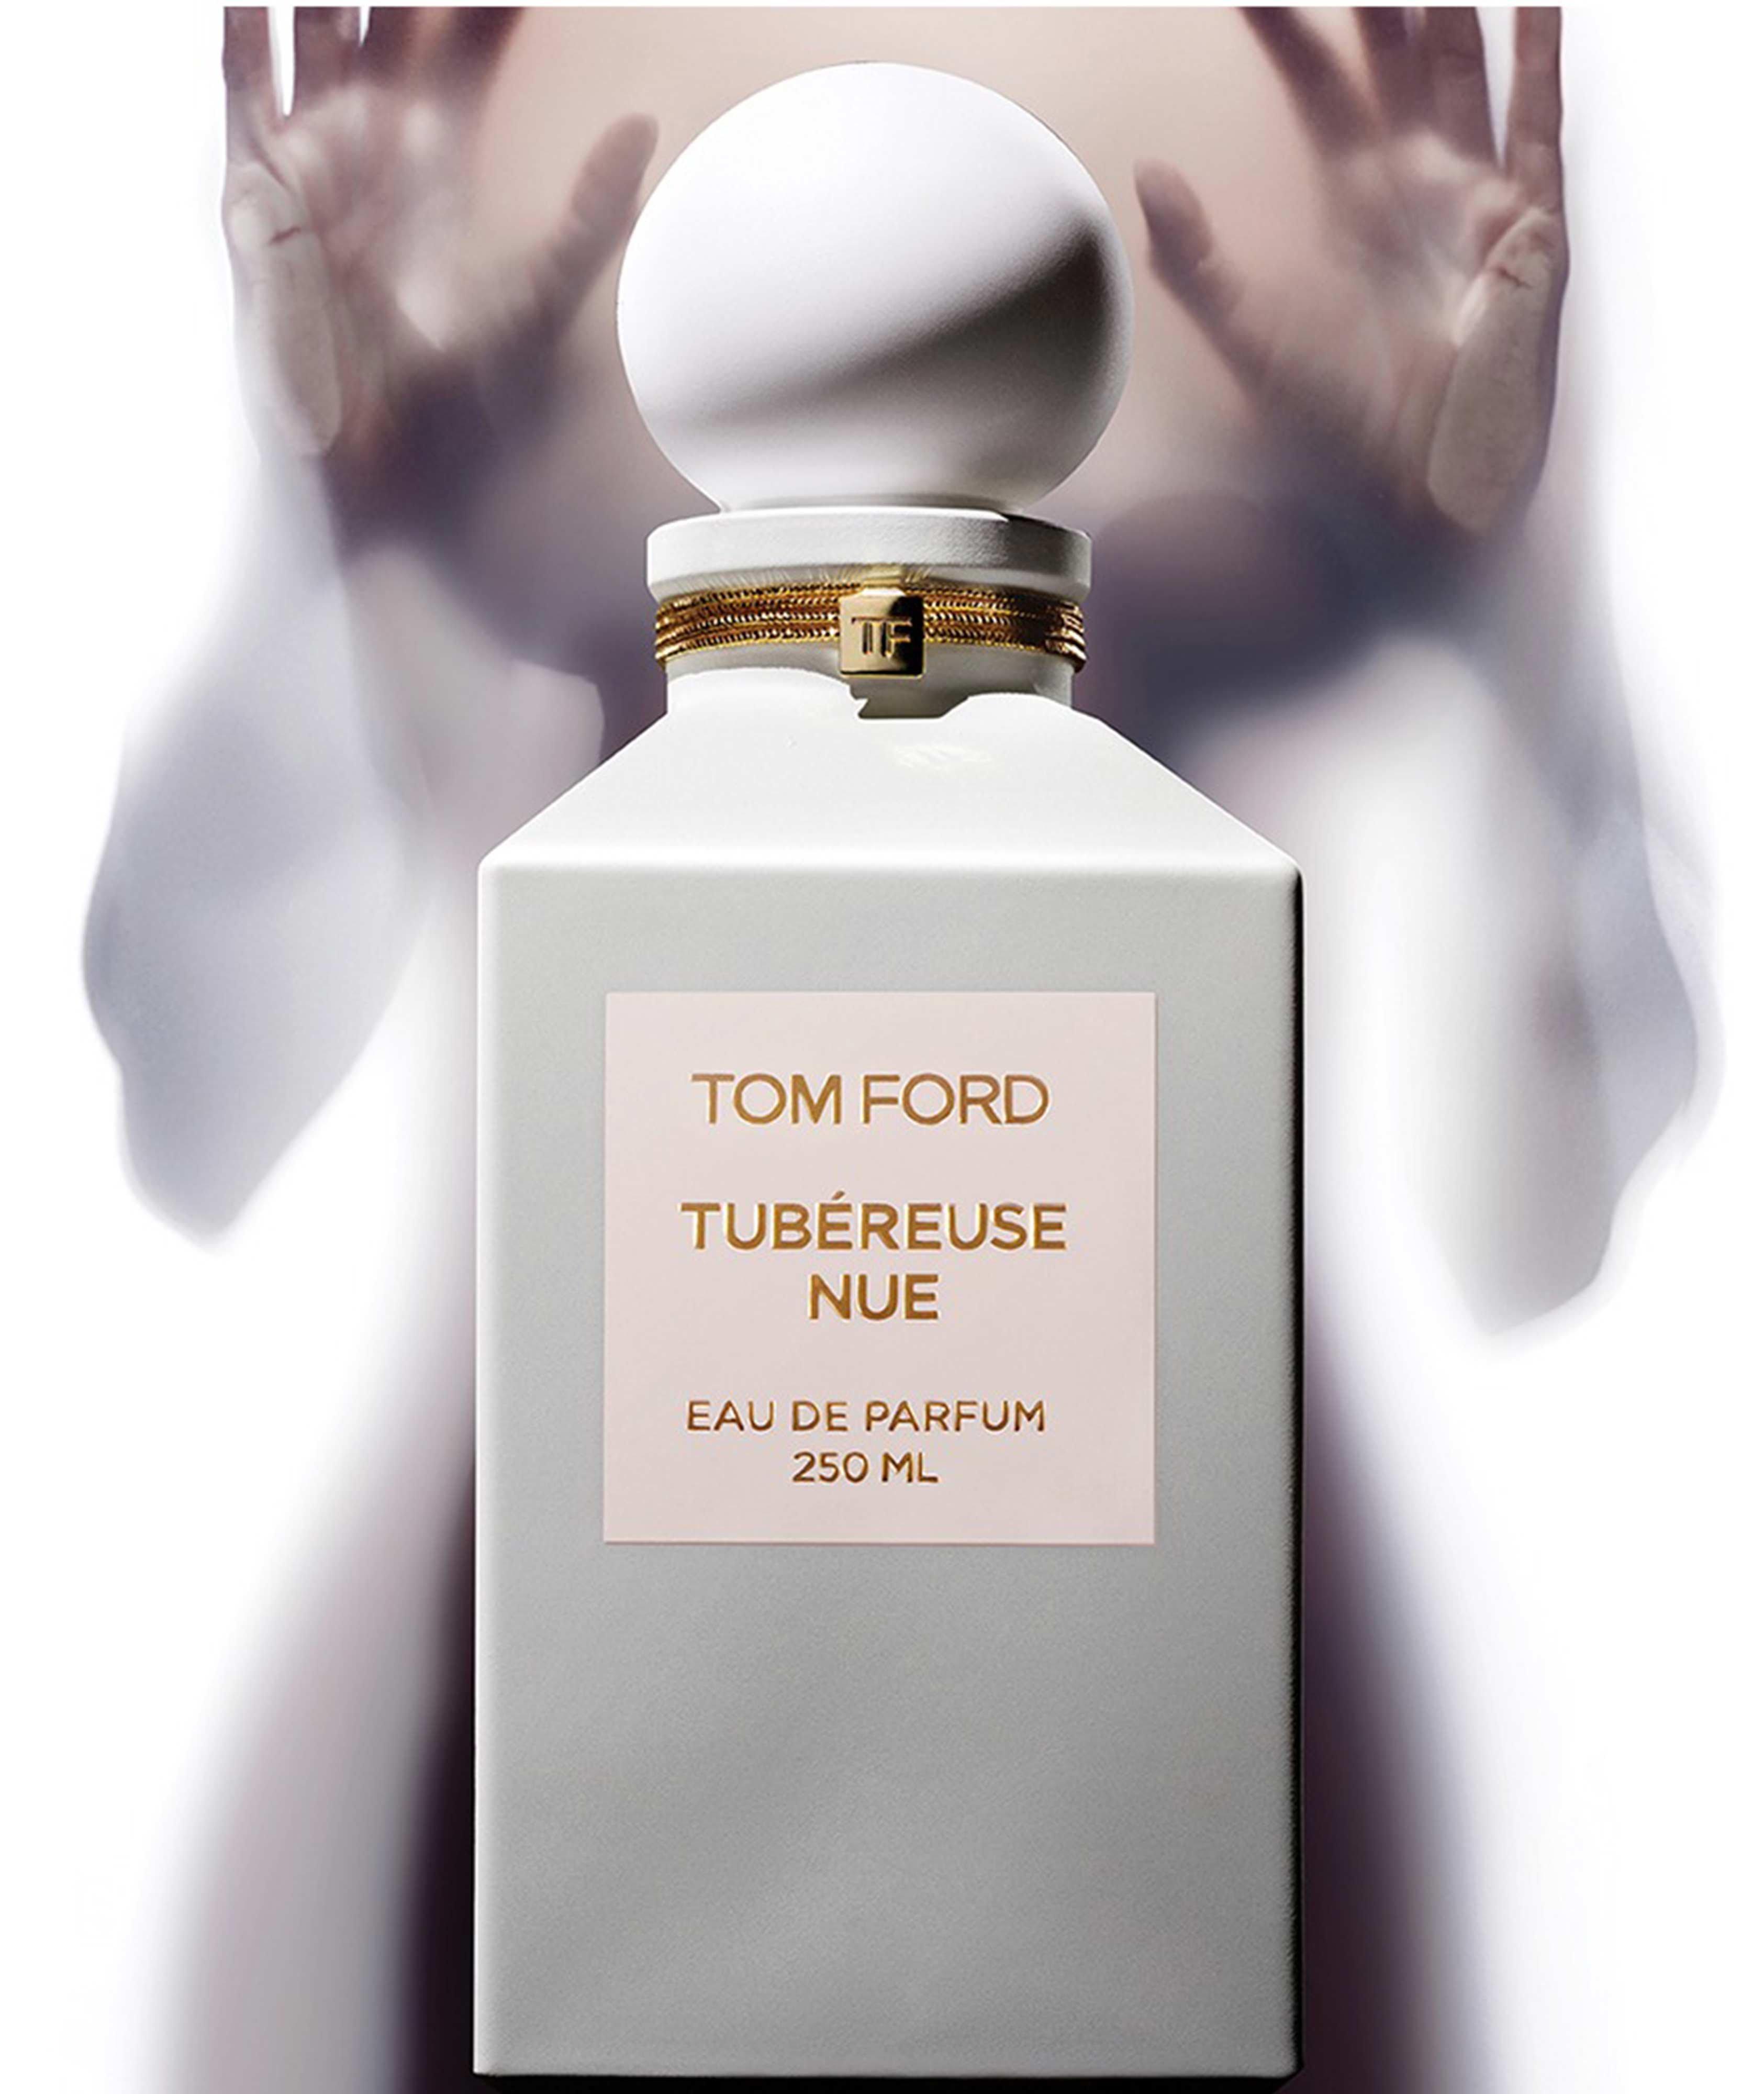 Eau de parfum Tubéreuse nue 250ml image 1